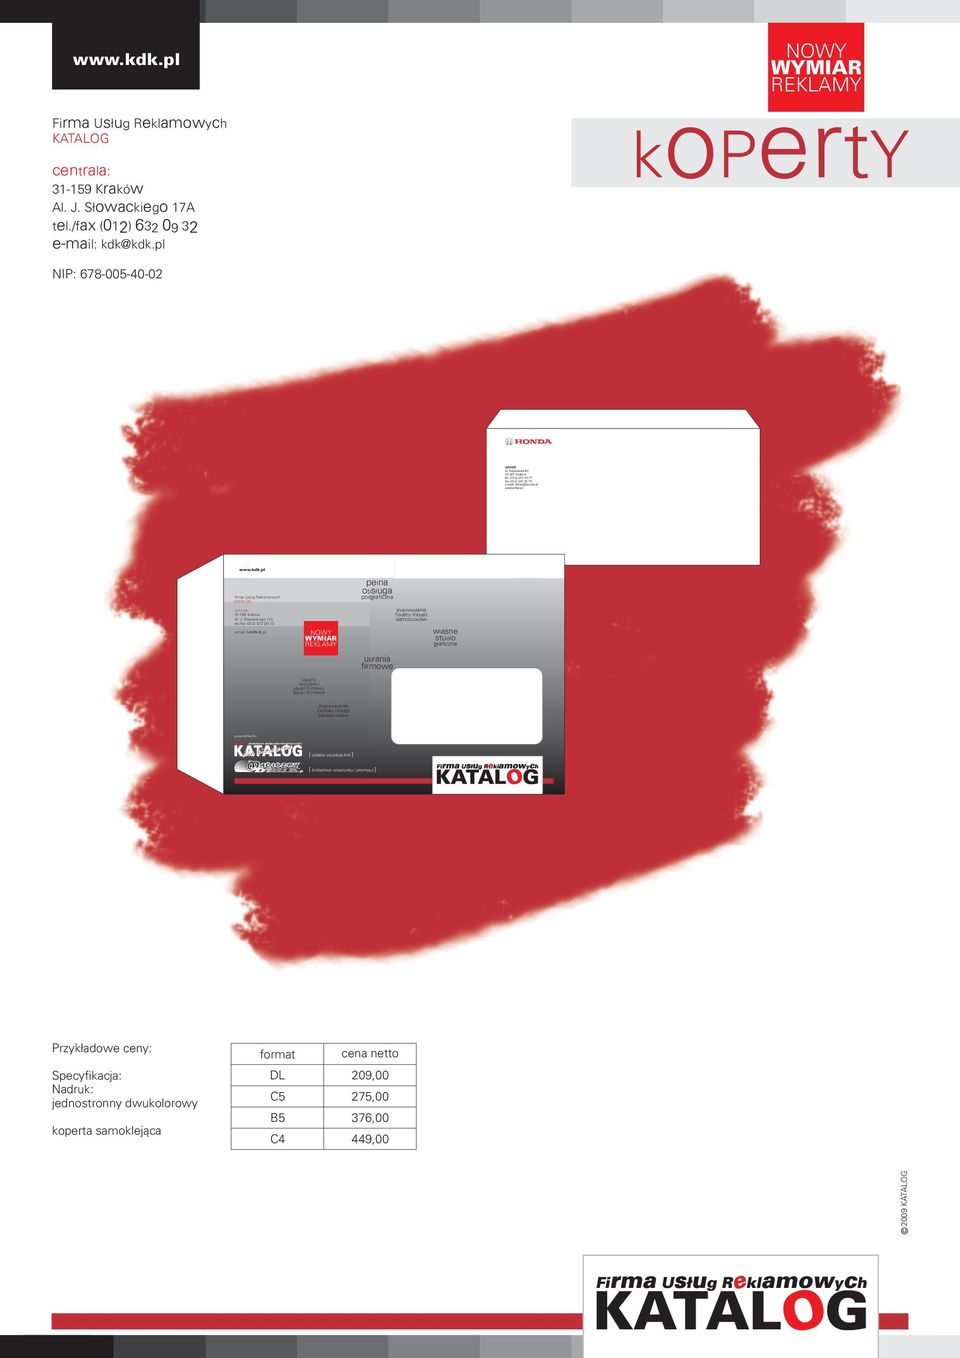 /fax (012) 632 09 32 koert p y wizytówki papier firmowy teczki firmowe pe³ na ob s³ uga poligraficzna indywidualne foldery modeli samochodów w³ asne studio graficzne